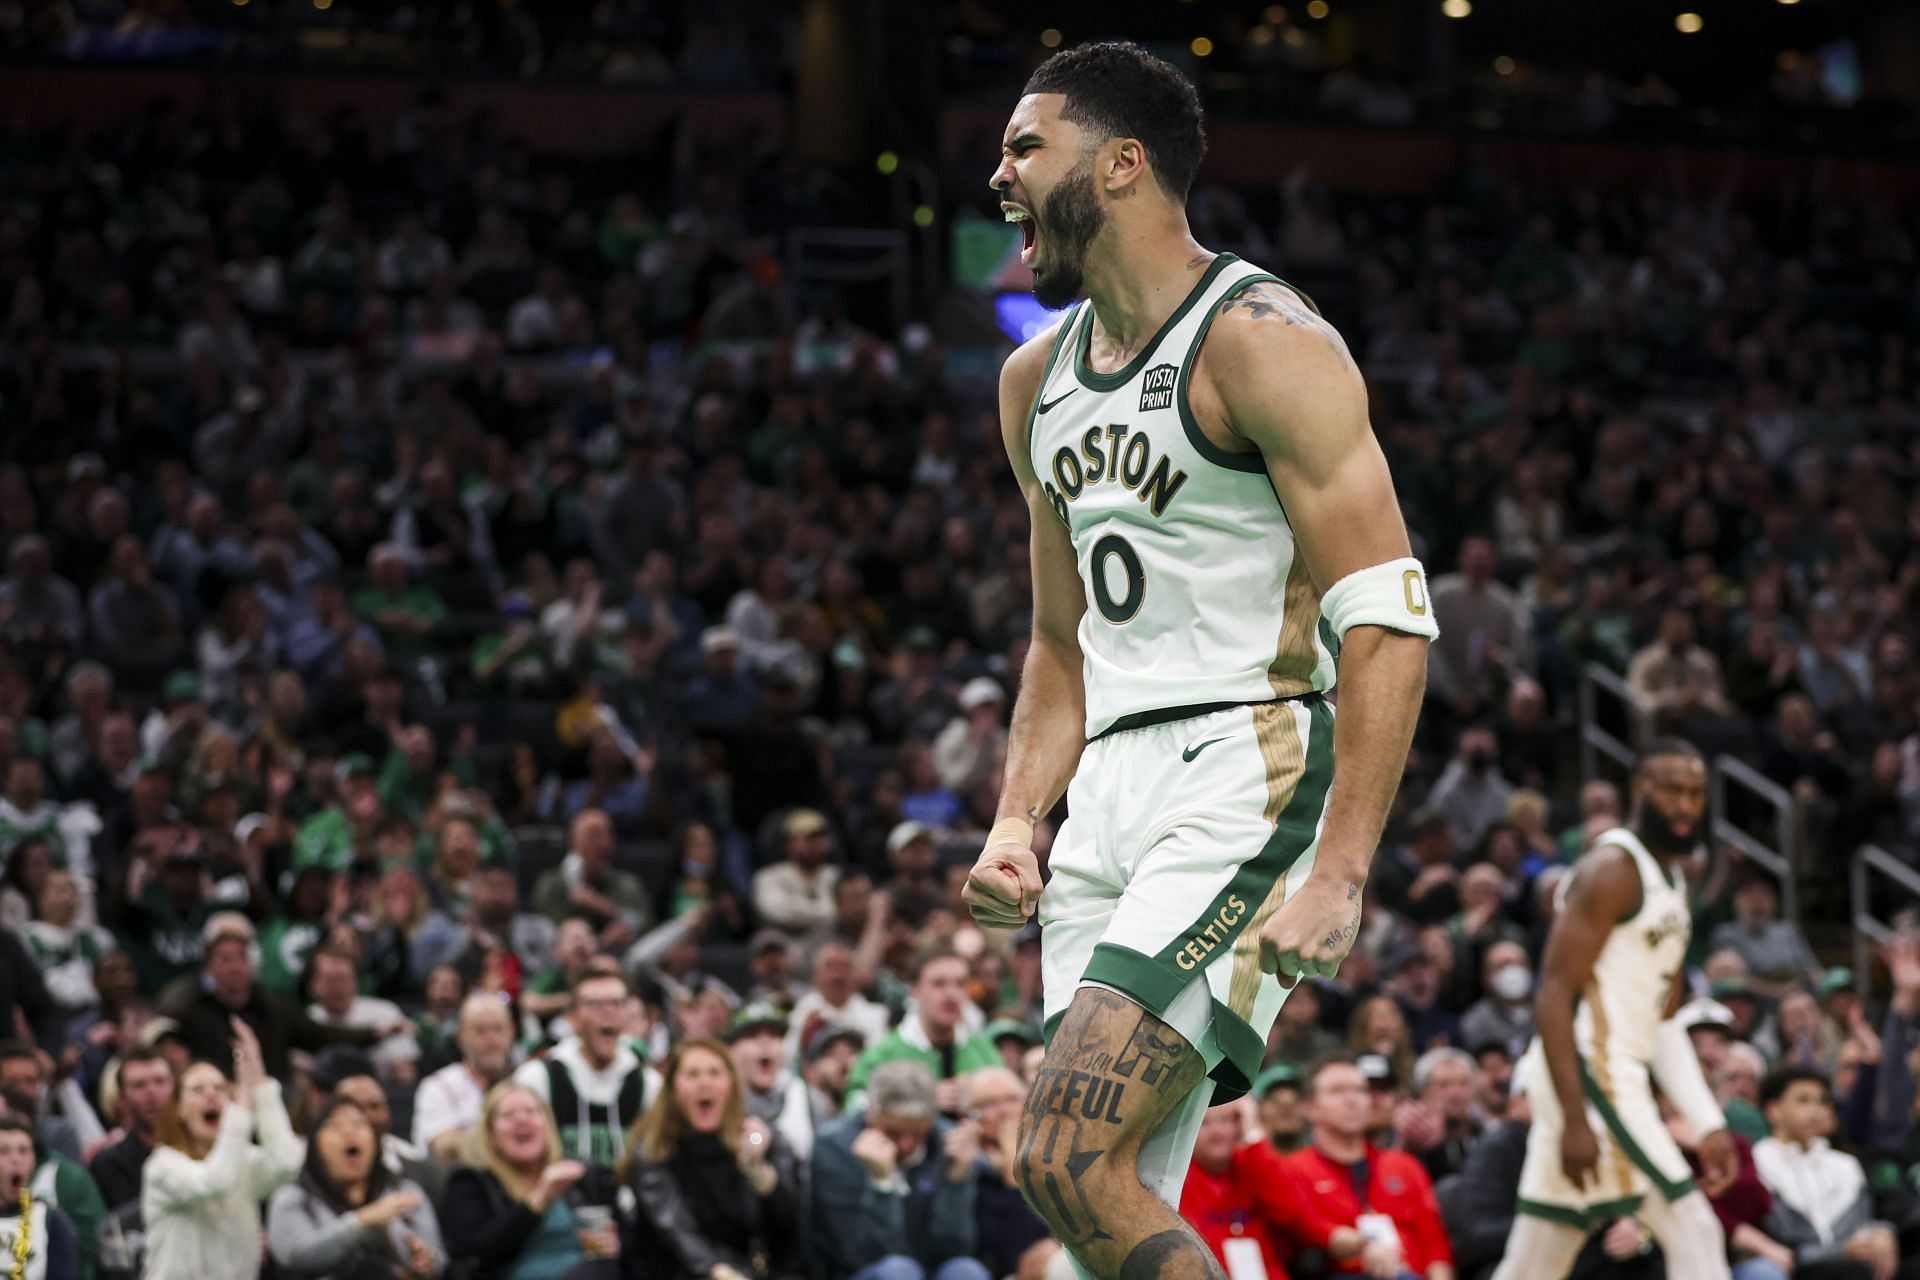 Philadelphia 76ers v Boston Celtics